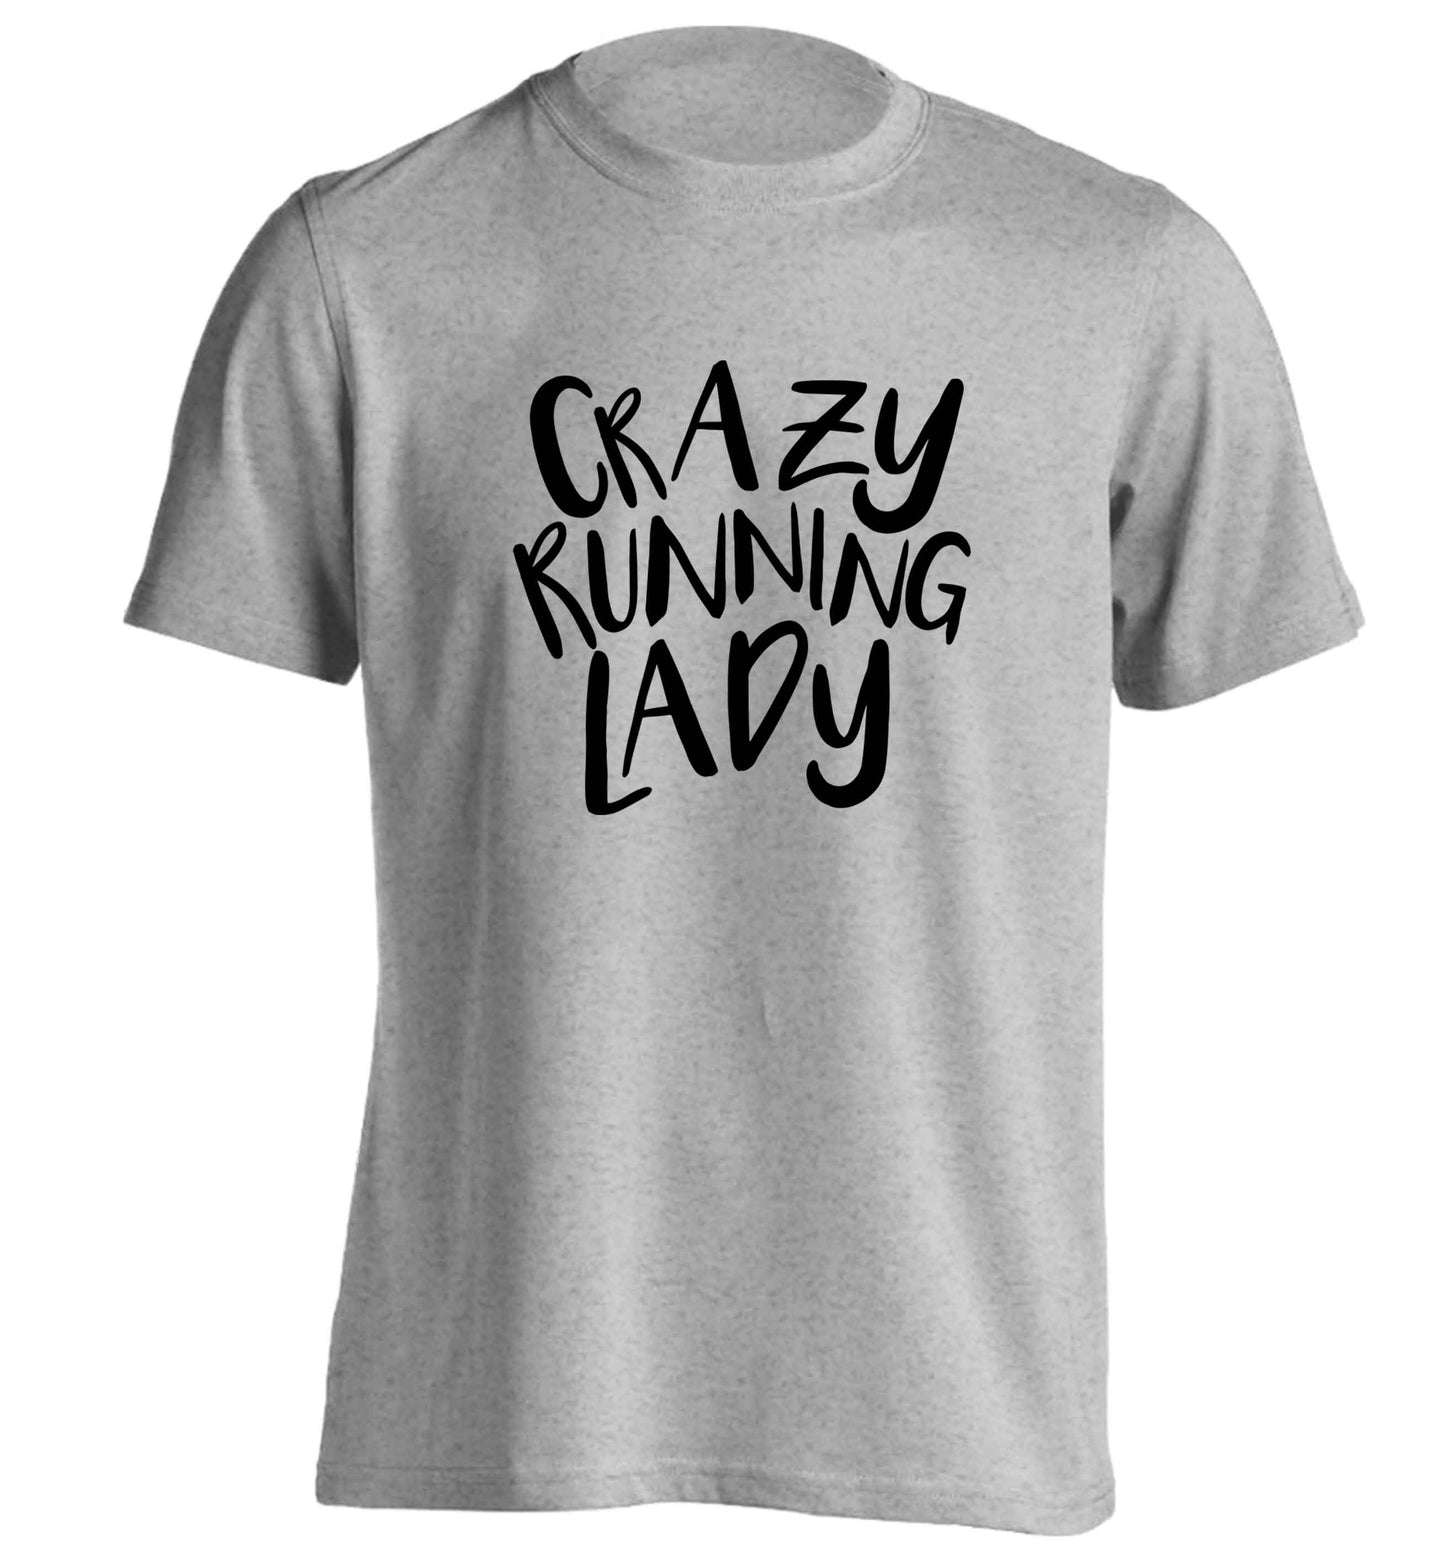 Crazy running lady adults unisex grey Tshirt 2XL